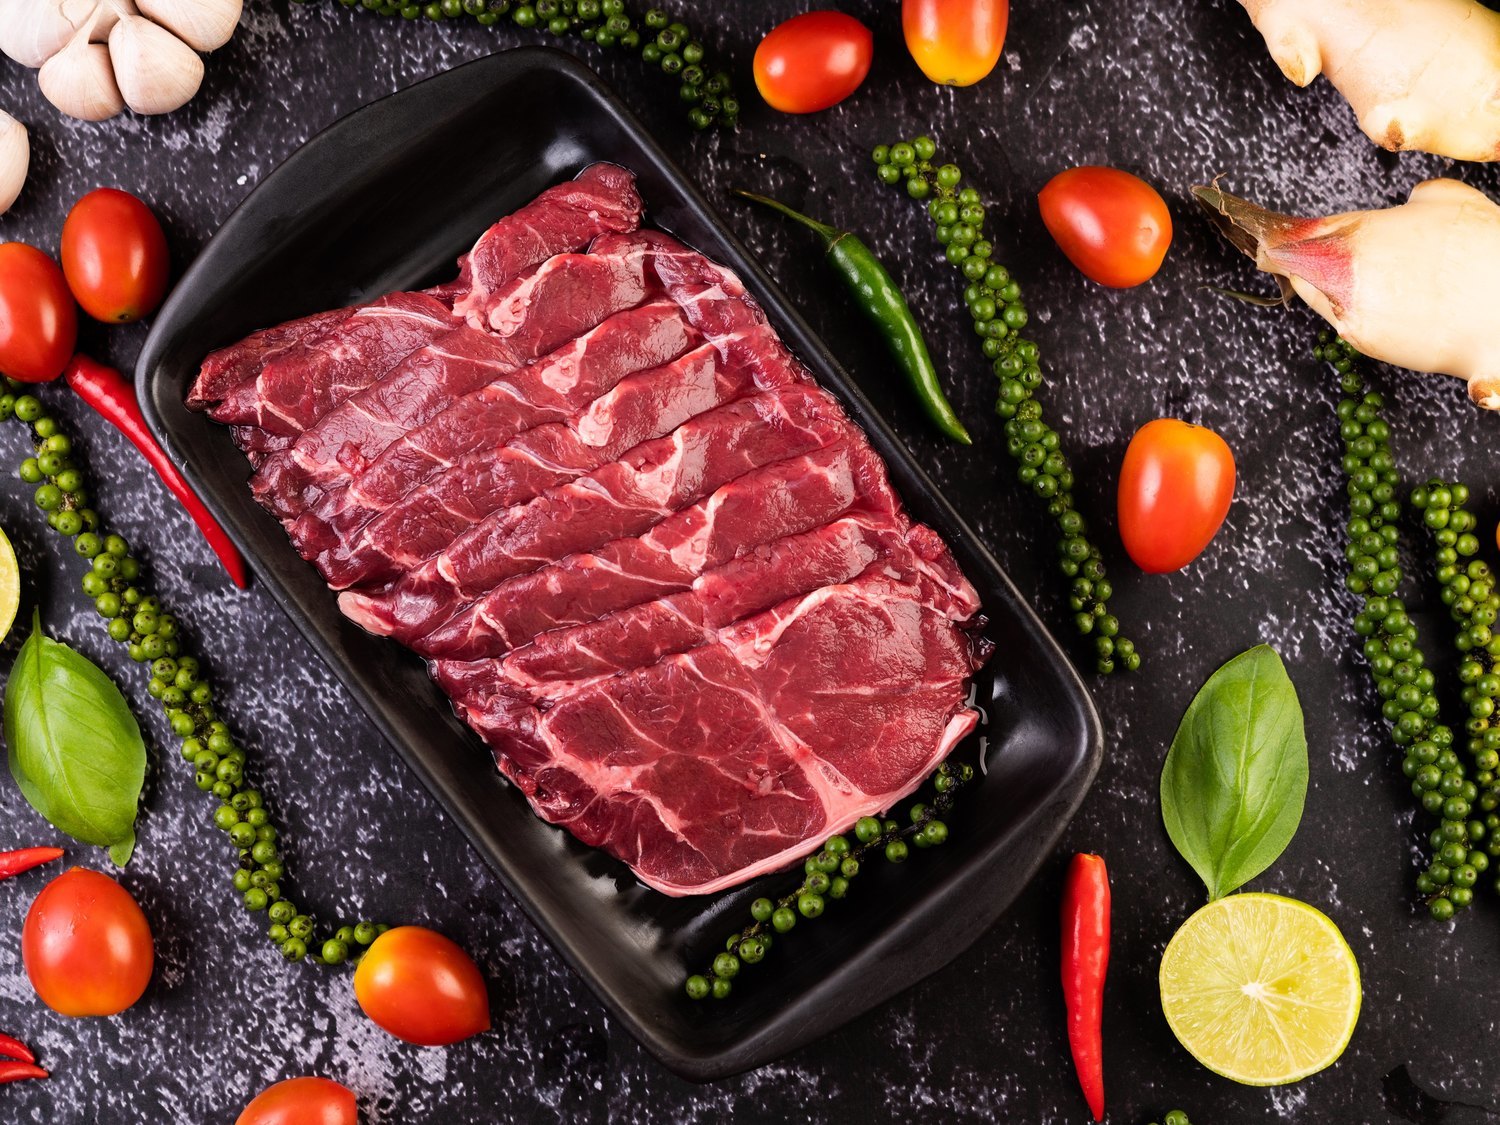 Alerta alimentaria: retiran estos lotes de carne de los supermercados y piden evitar su consumo